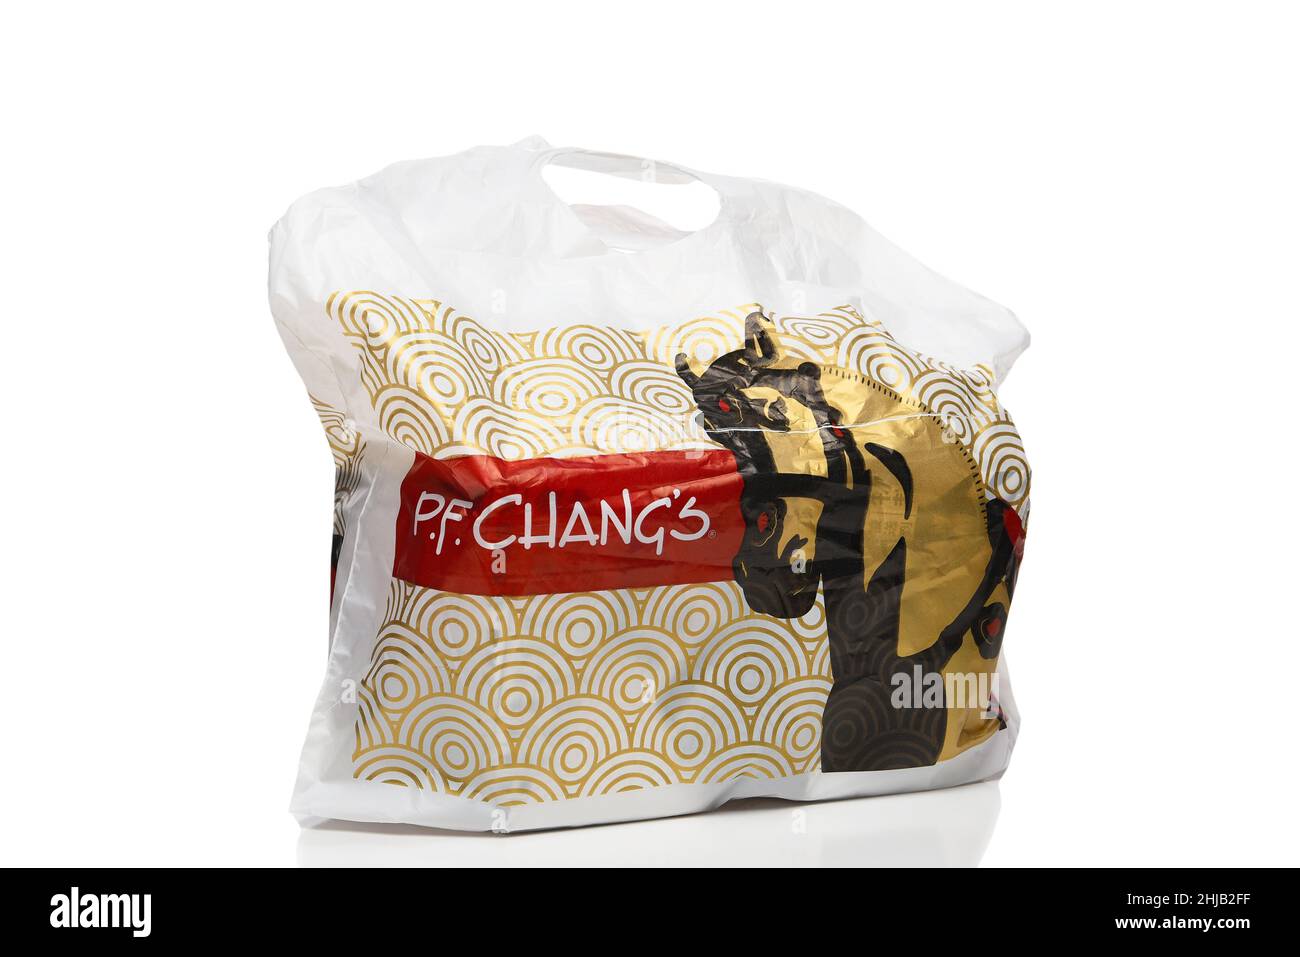 IRVINE, KALIFORNIEN - 27. JANUAR 2022: P. F. Changs China Bistro Take-Out Bag. Stockfoto